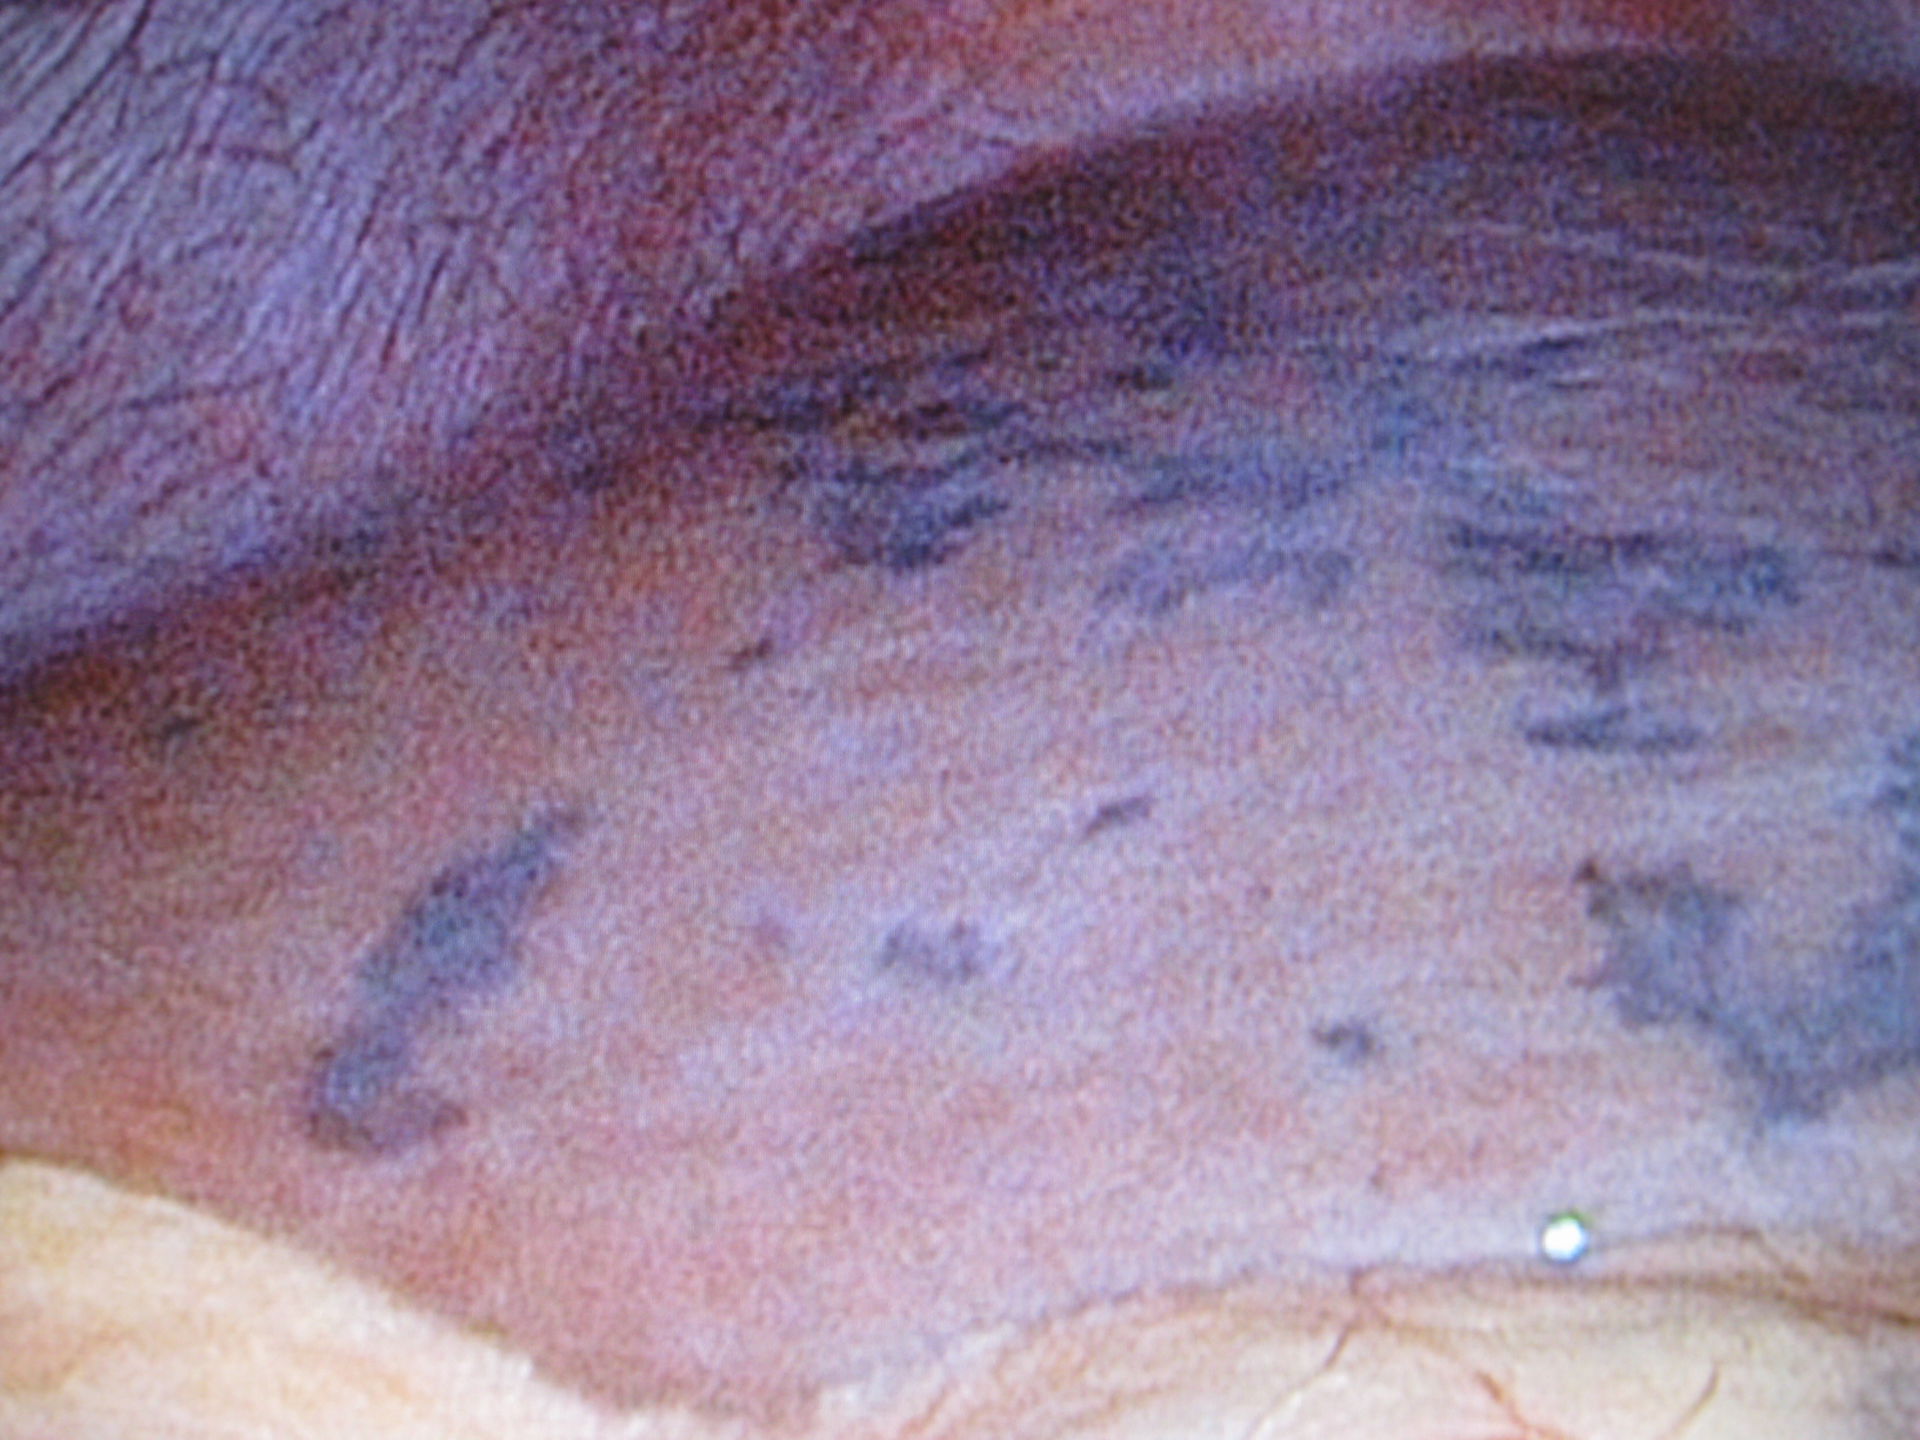 Hämangiom - multiple Hämangiome bei einem 14 jährigen Mädchen in beiden Leberlappen